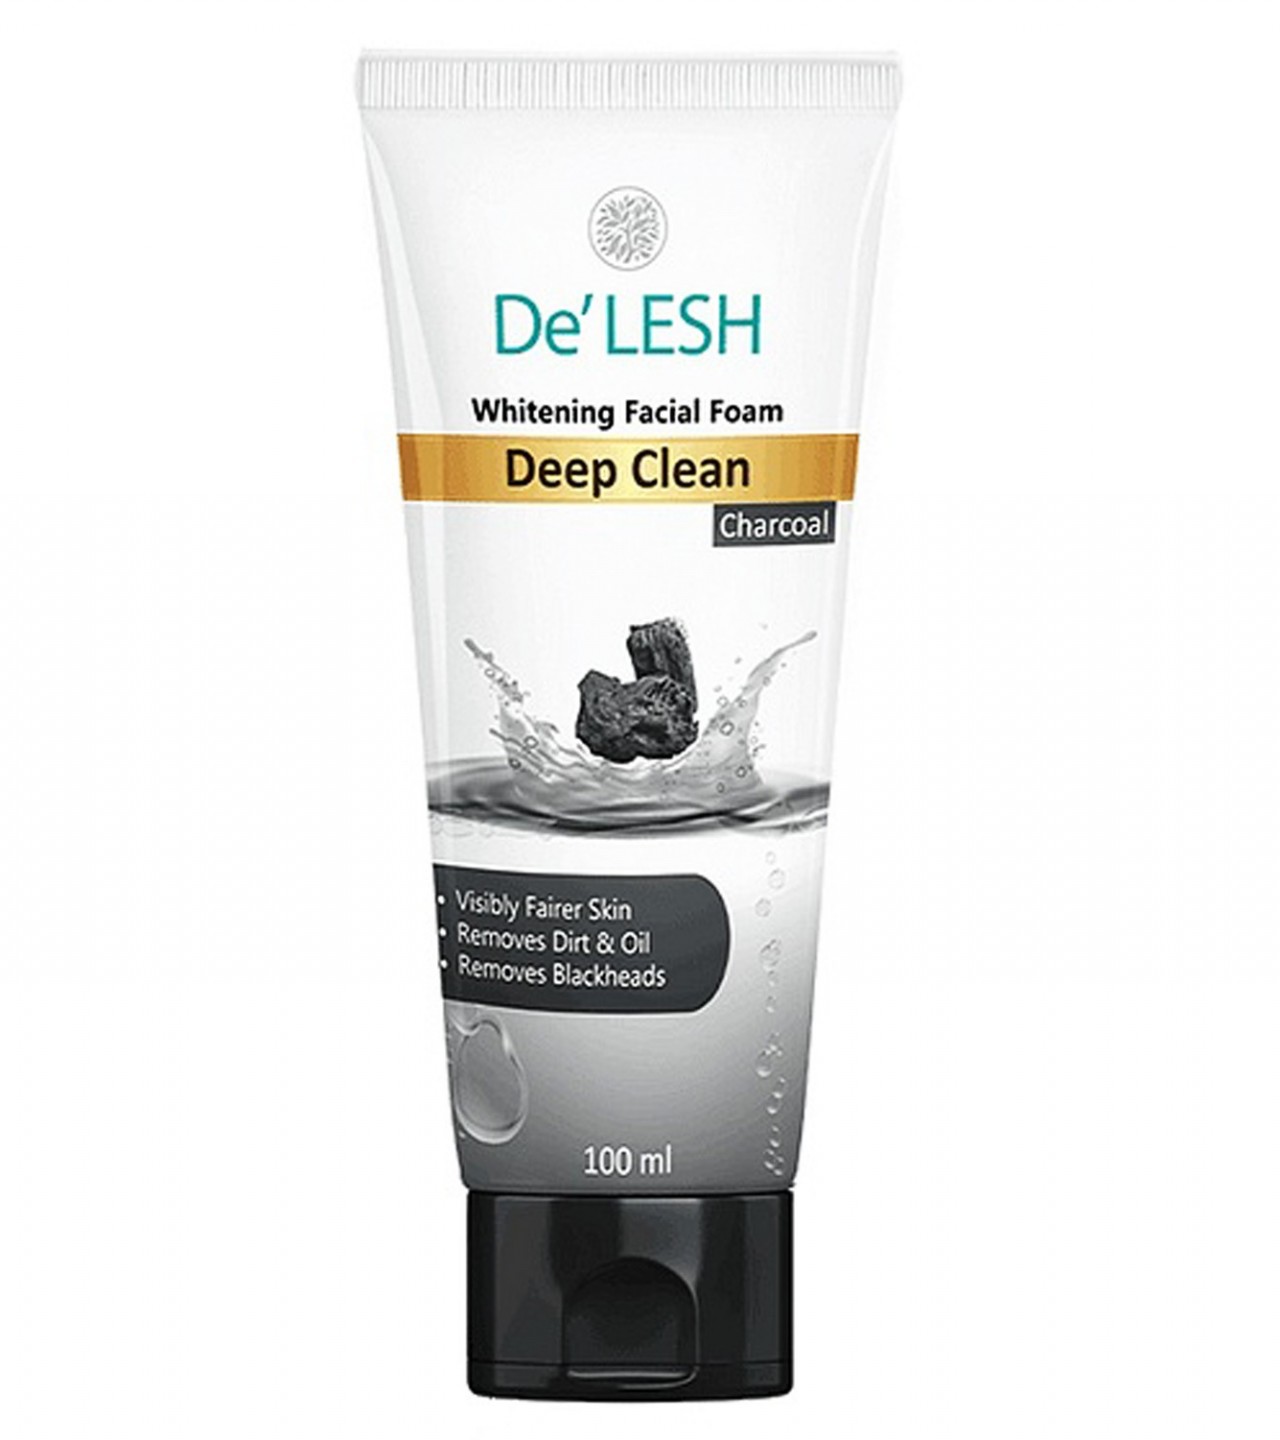 De’Lesh Charcoal Whitening Facial Foam Face Wash - 100 ml